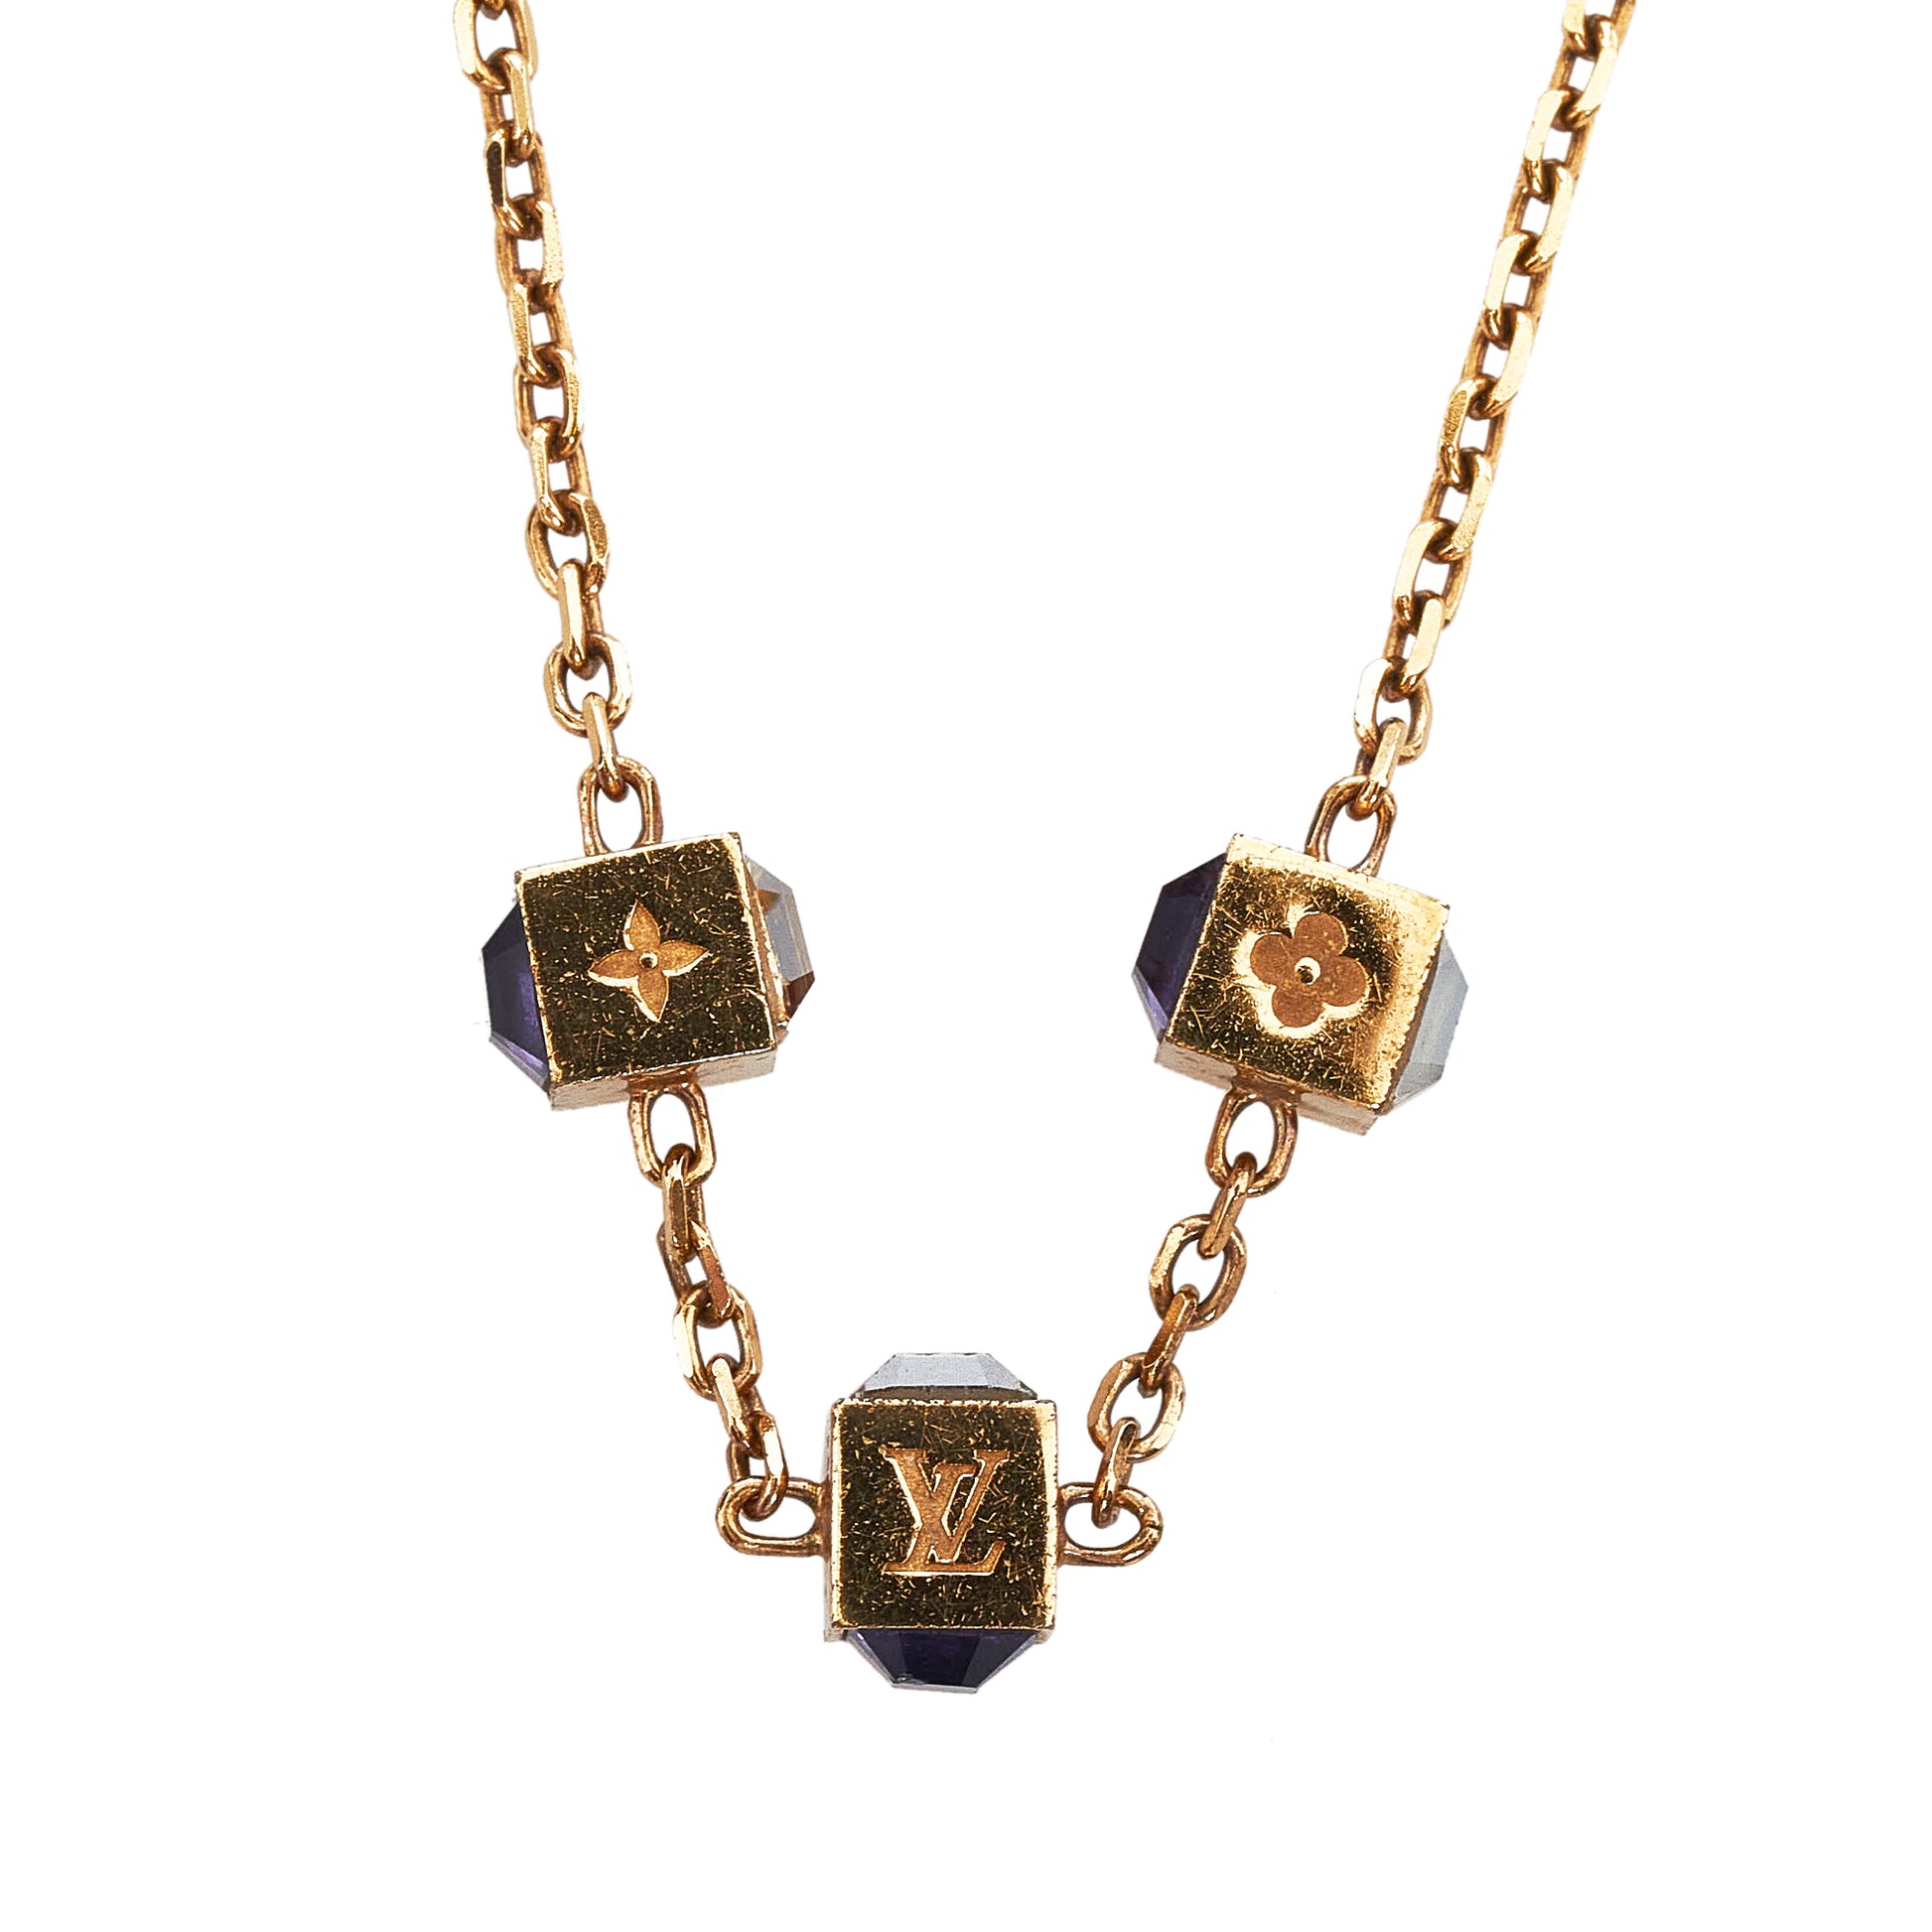 Louis Vuitton, Jewelry, Louis Vuitton Corey Gamble Necklace Costume  Necklace